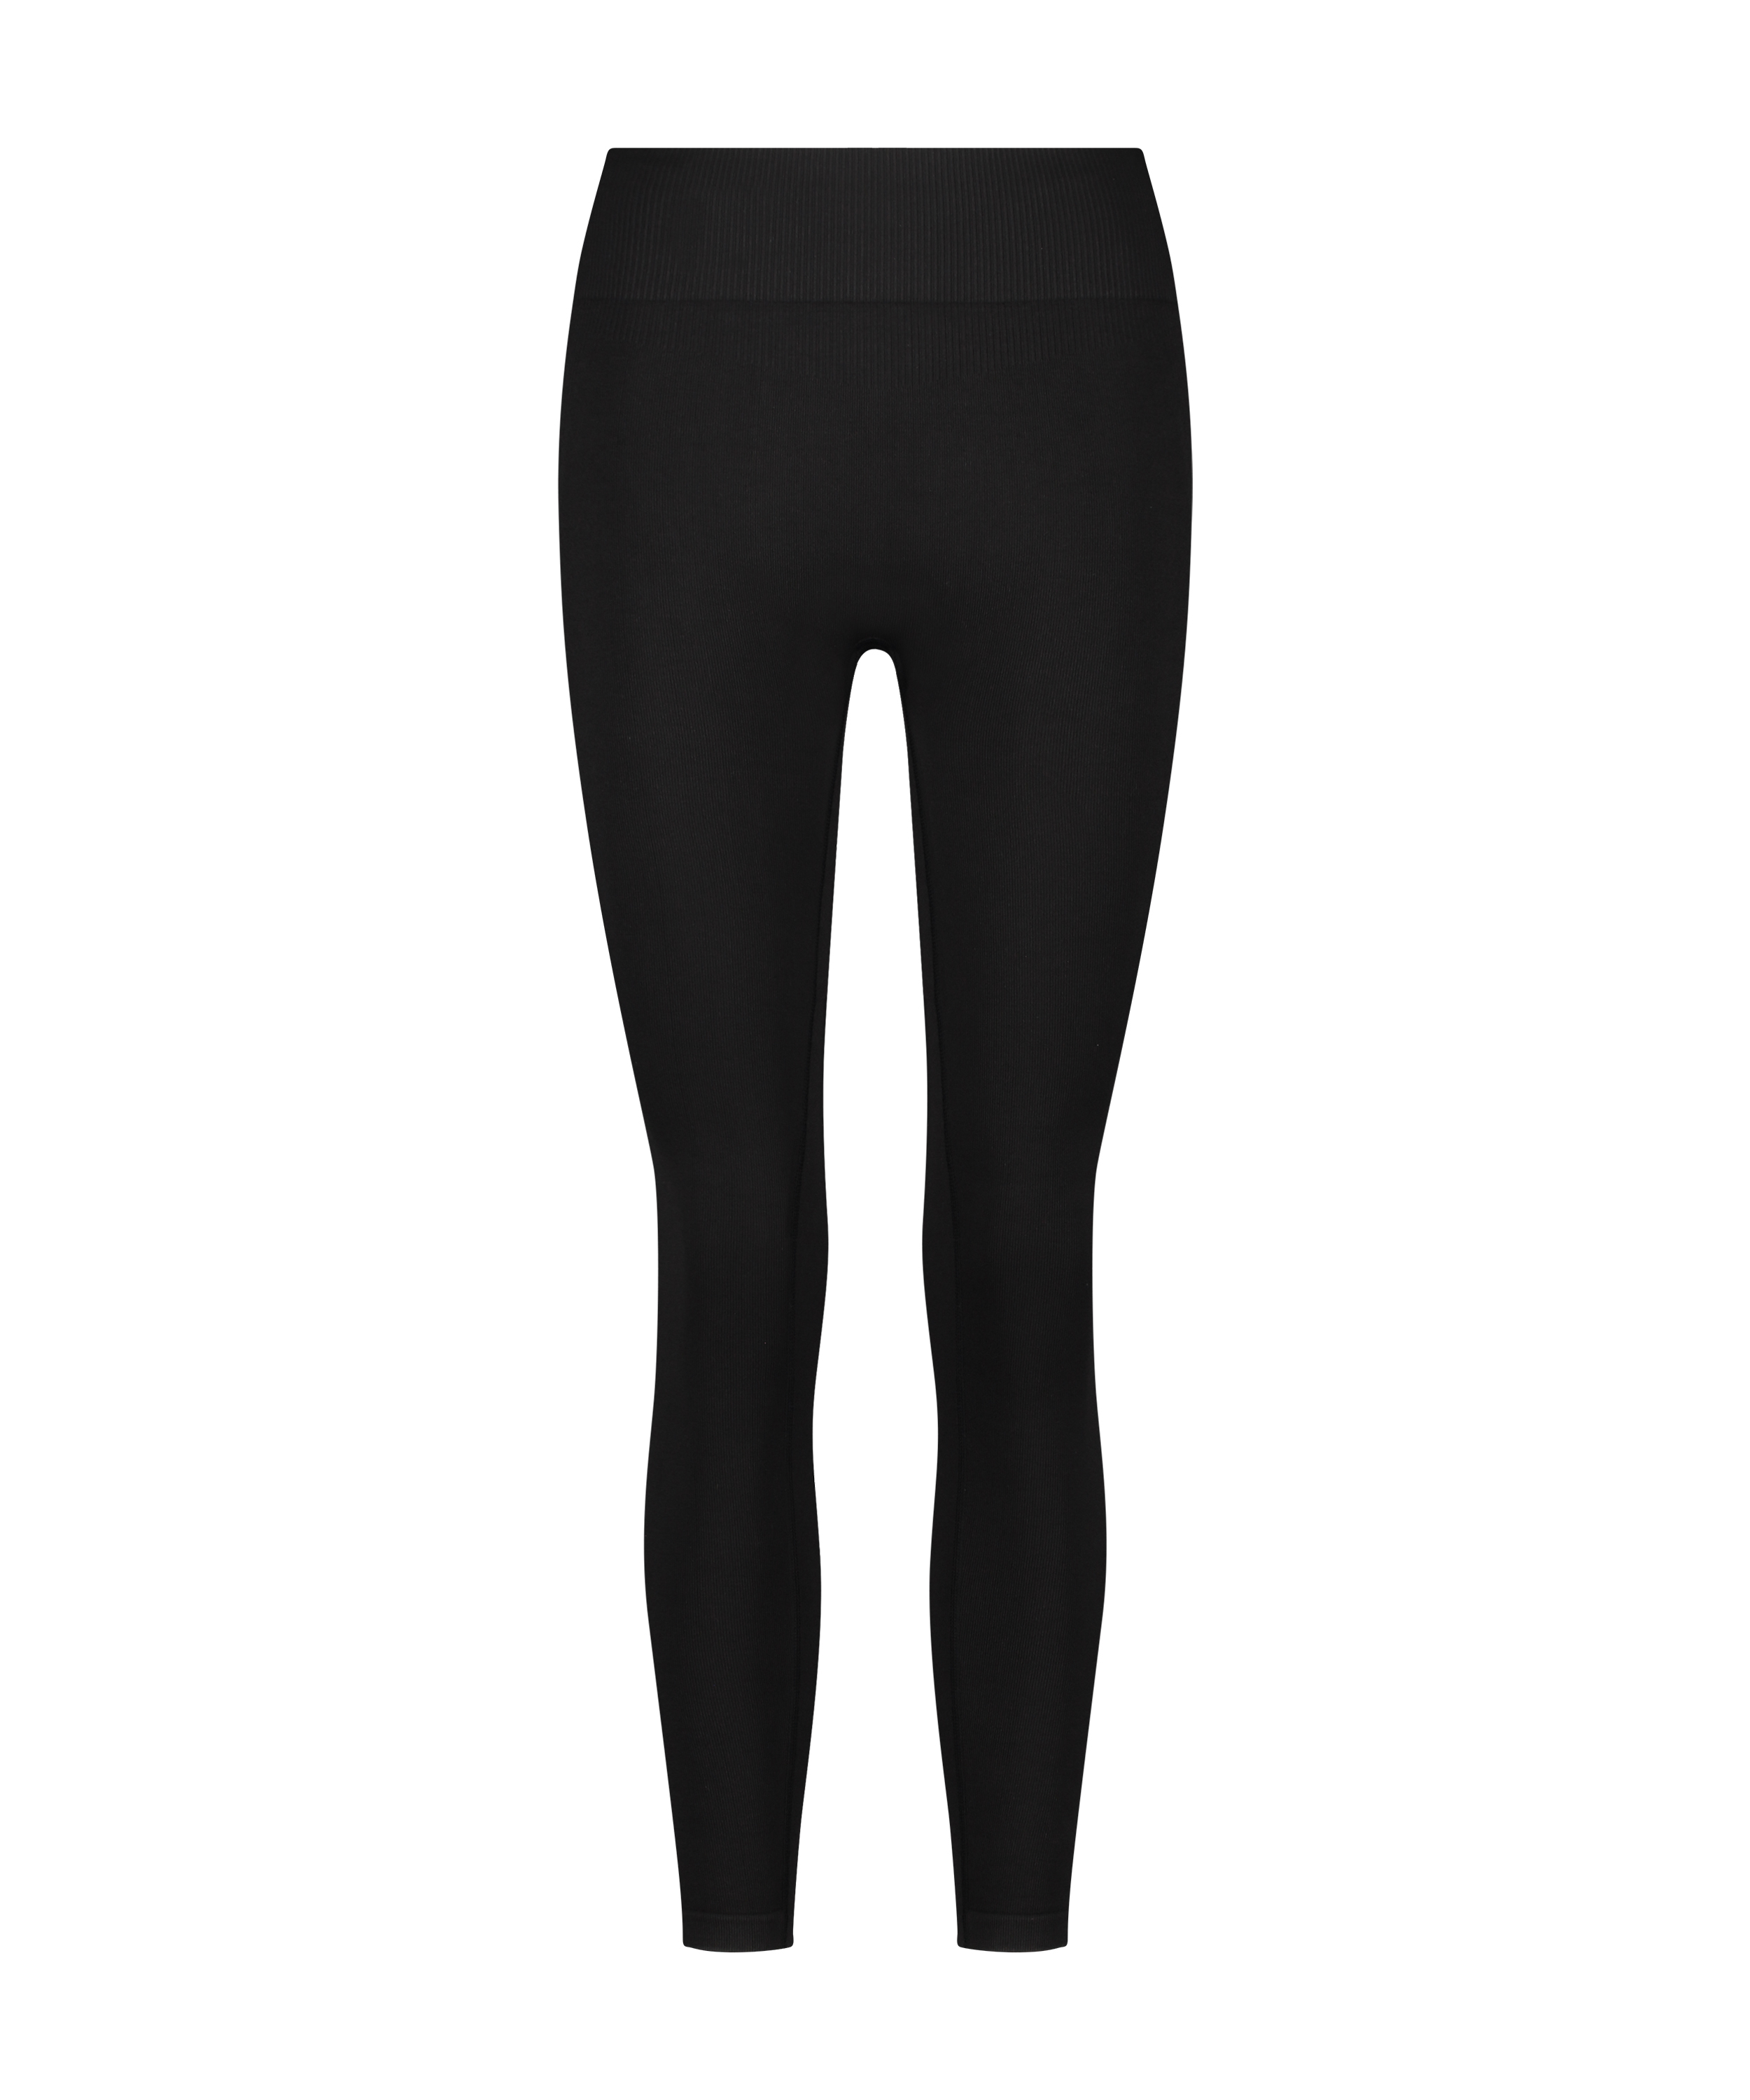 HKMX High waisted seamless sport legging, Black, main